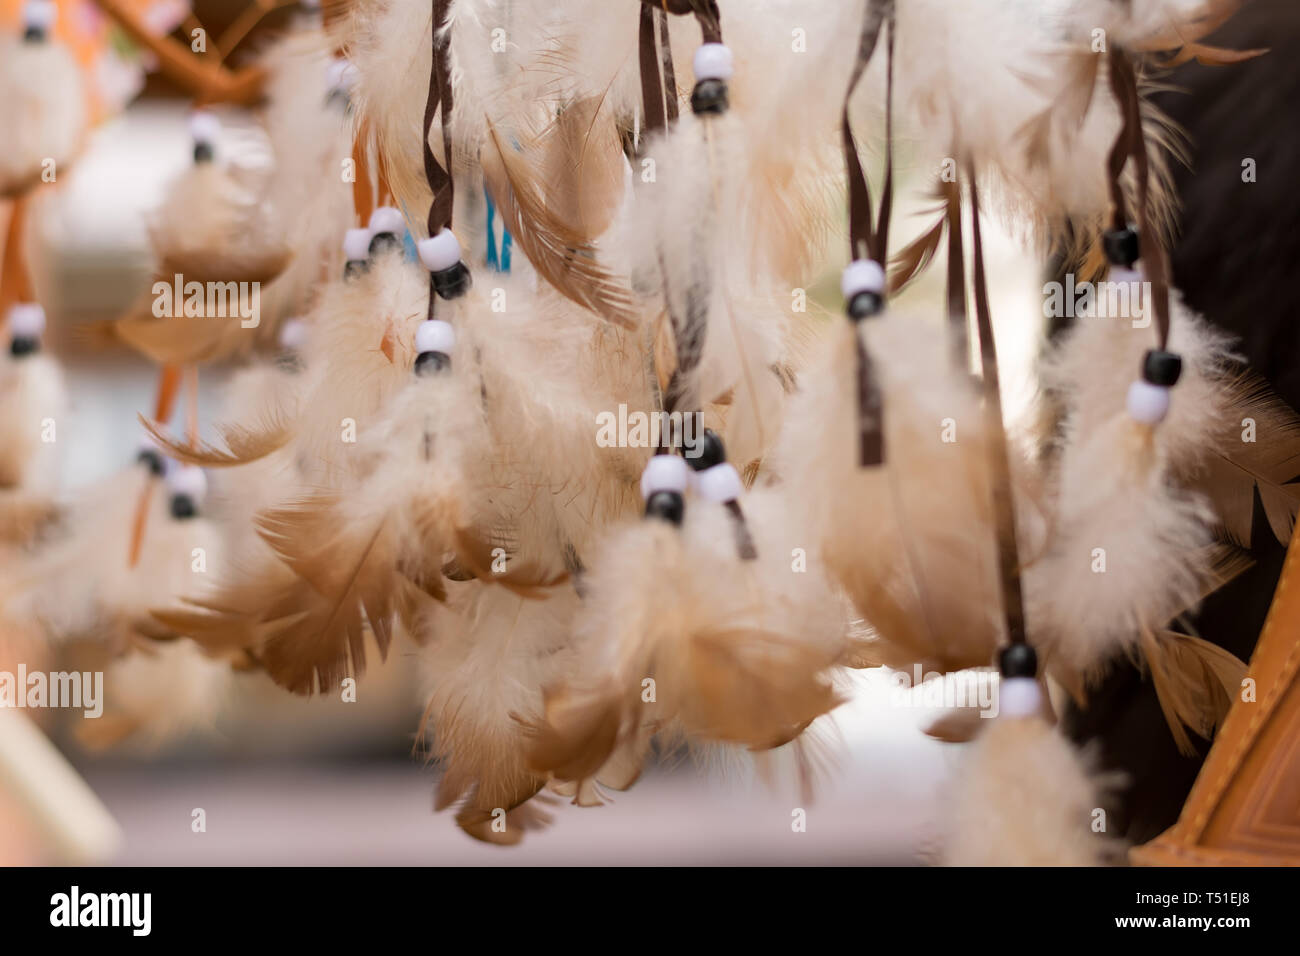 Amulettes de plumes blanches avec des cordes de couleur accroché sur le marché pour la vente Banque D'Images